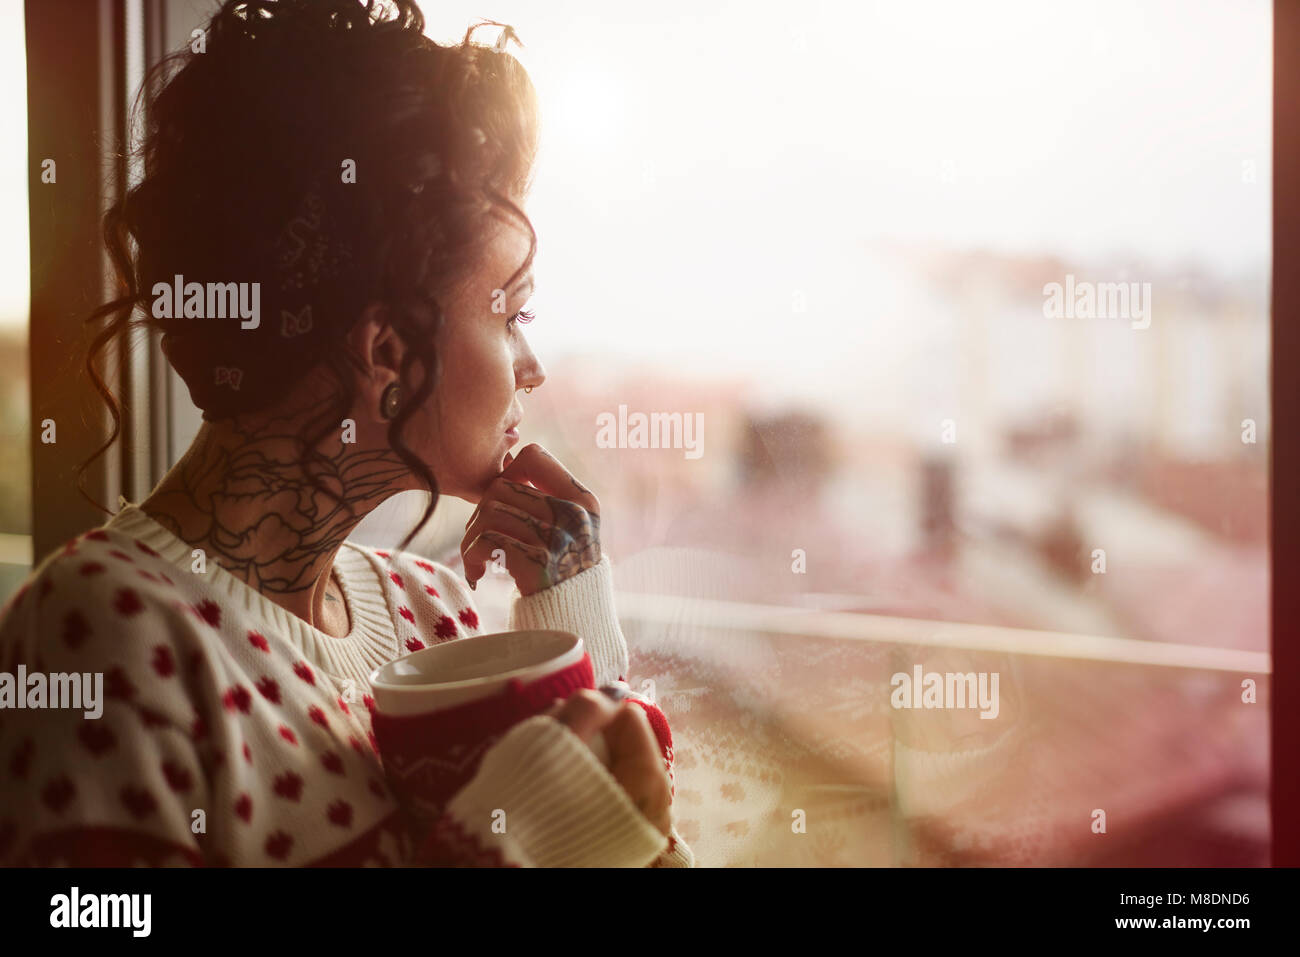 Giovane donna guardando fuori della finestra, tenendo una bevanda calda, espressione pensosa Foto Stock